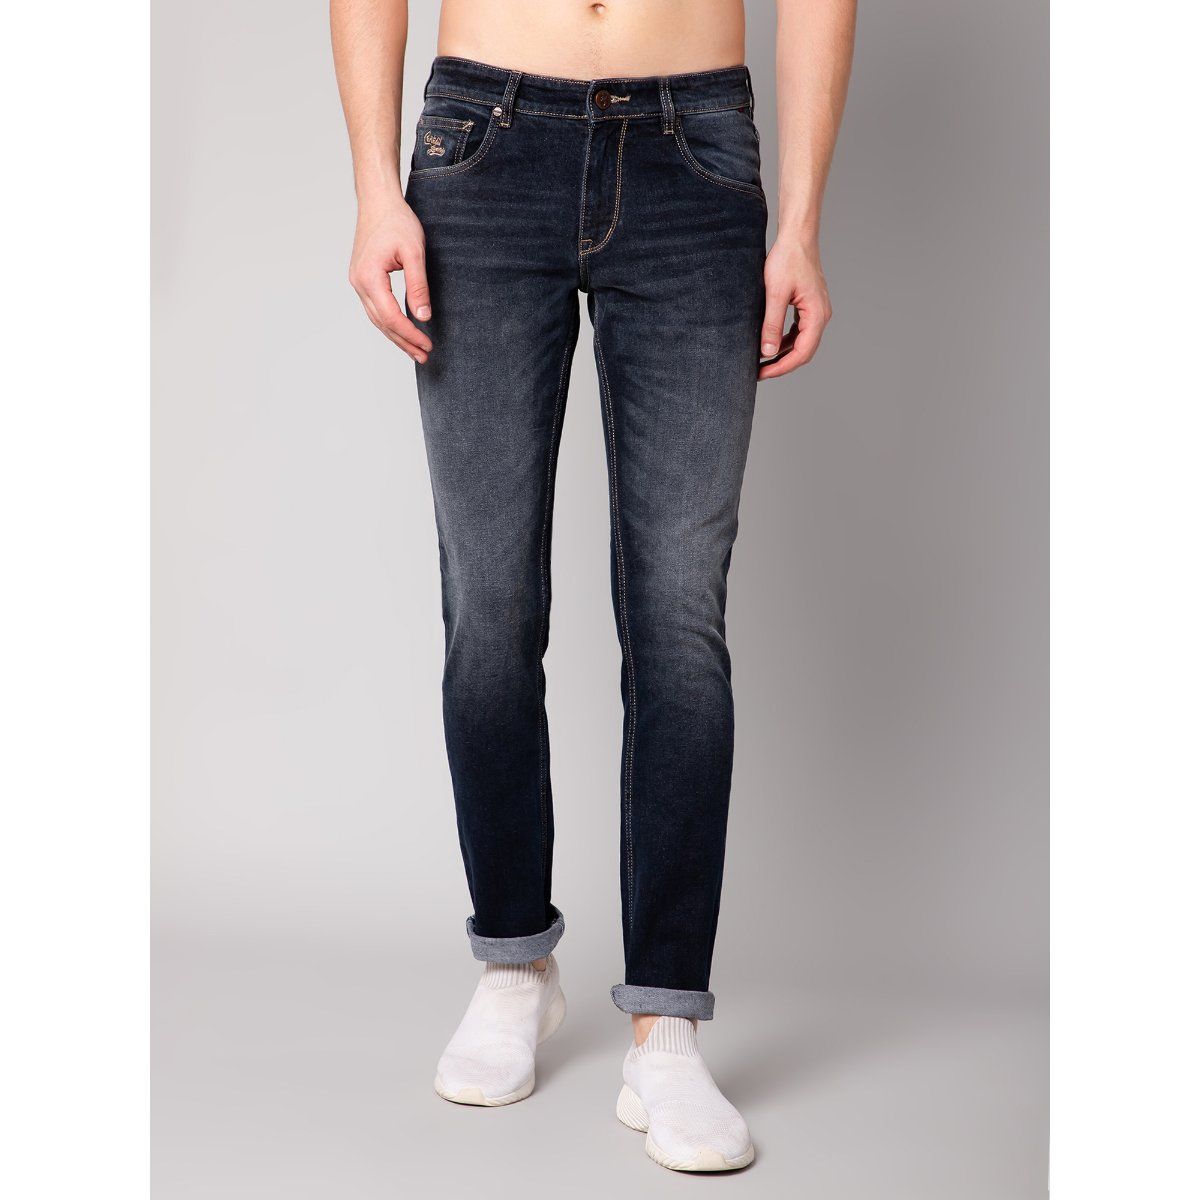 Cantabil 89 Men's Gray Mid Rise Skinny Denim Jeans Sz 36 | eBay